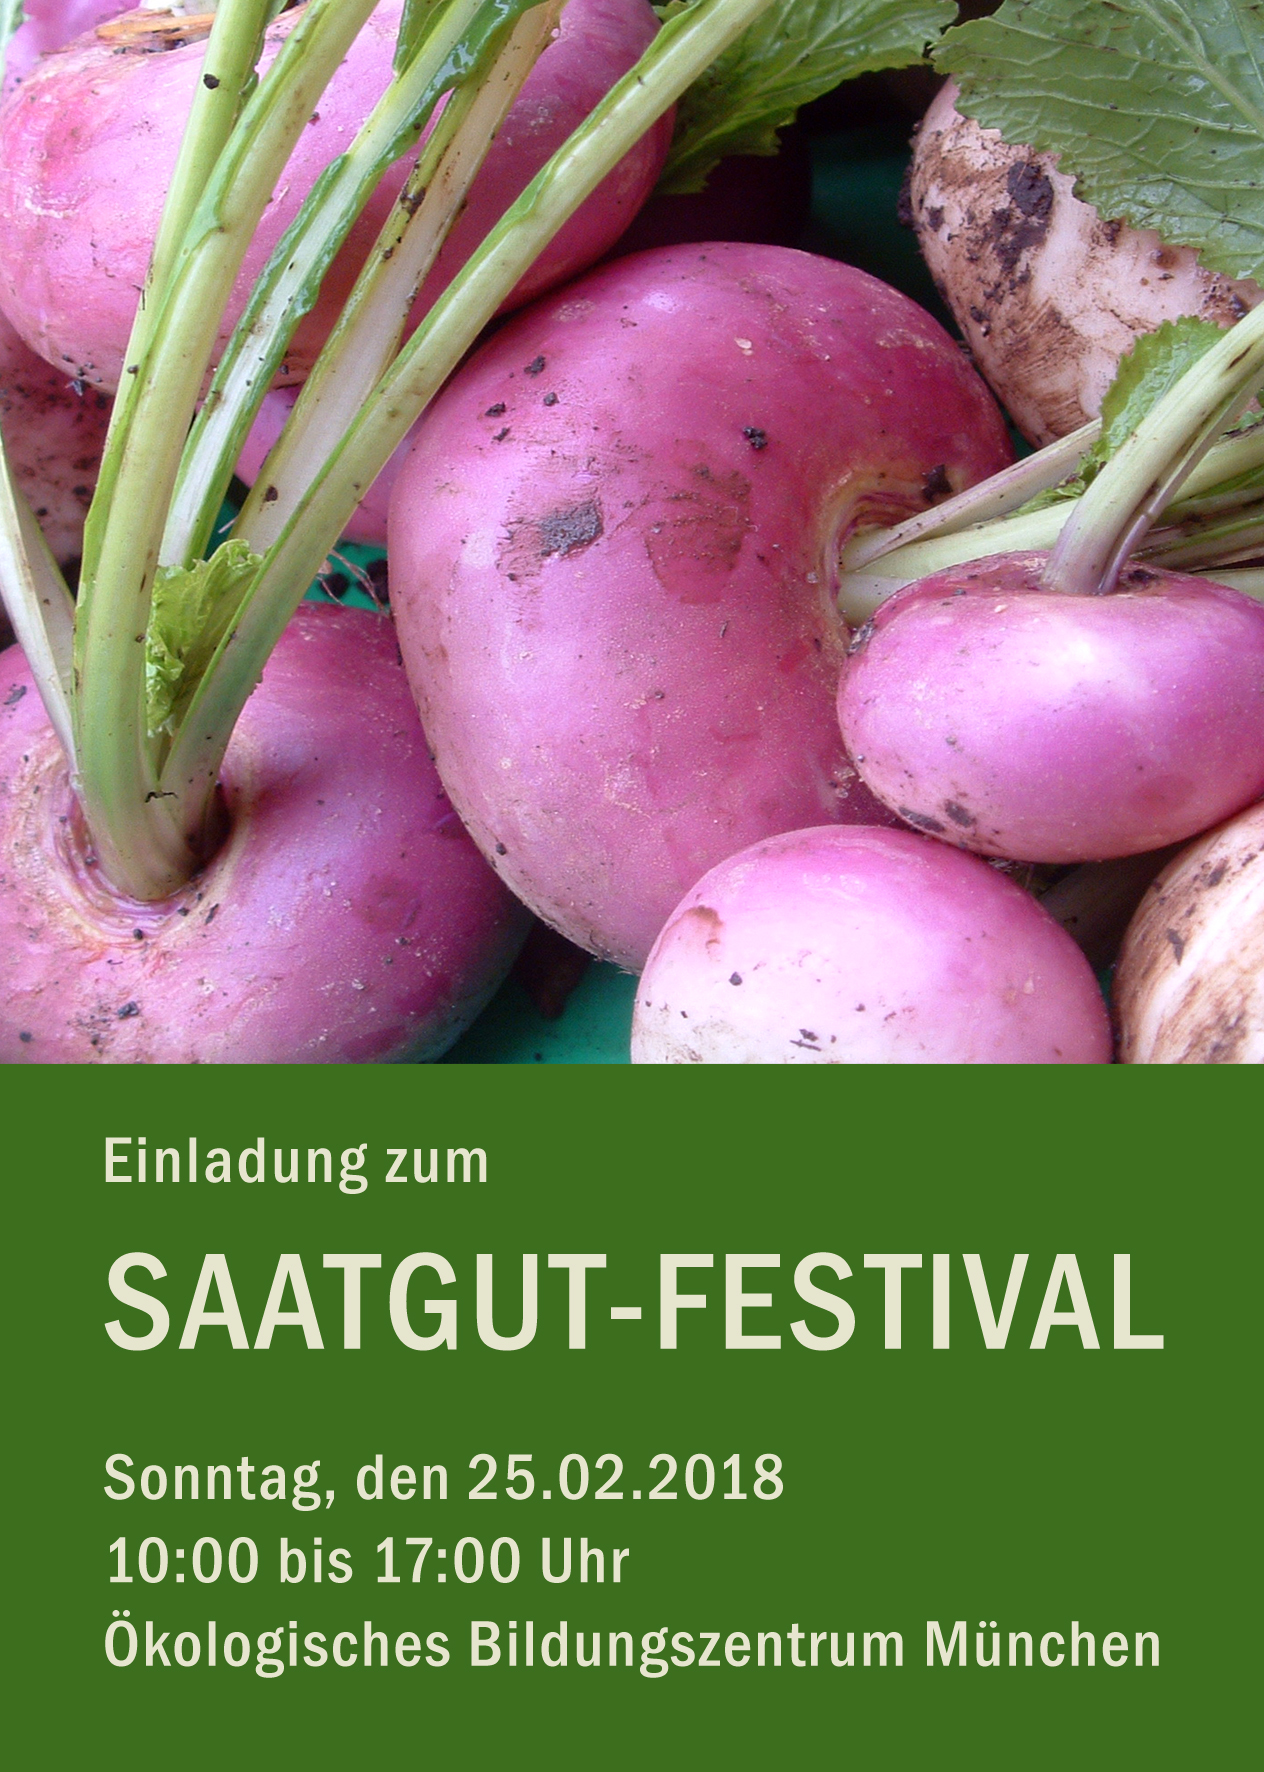 Saatgut-Festival 2018